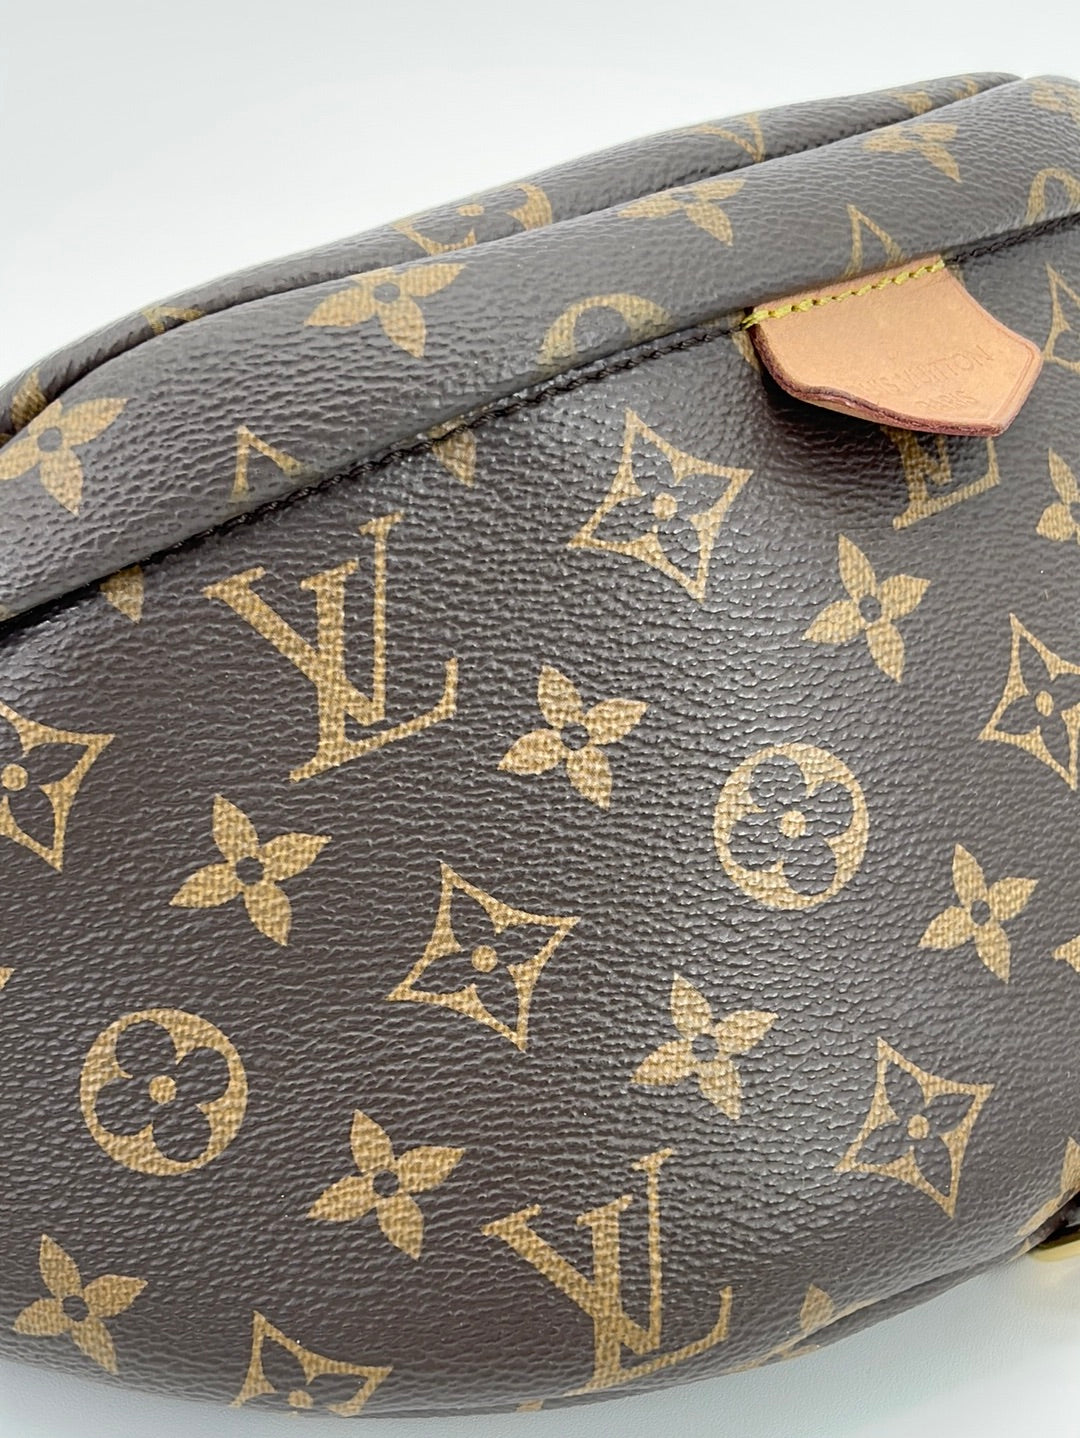 Preloved Louis Vuitton Monogram Pochette Marelle Belt Bag MI0085 92123 –  KimmieBBags LLC